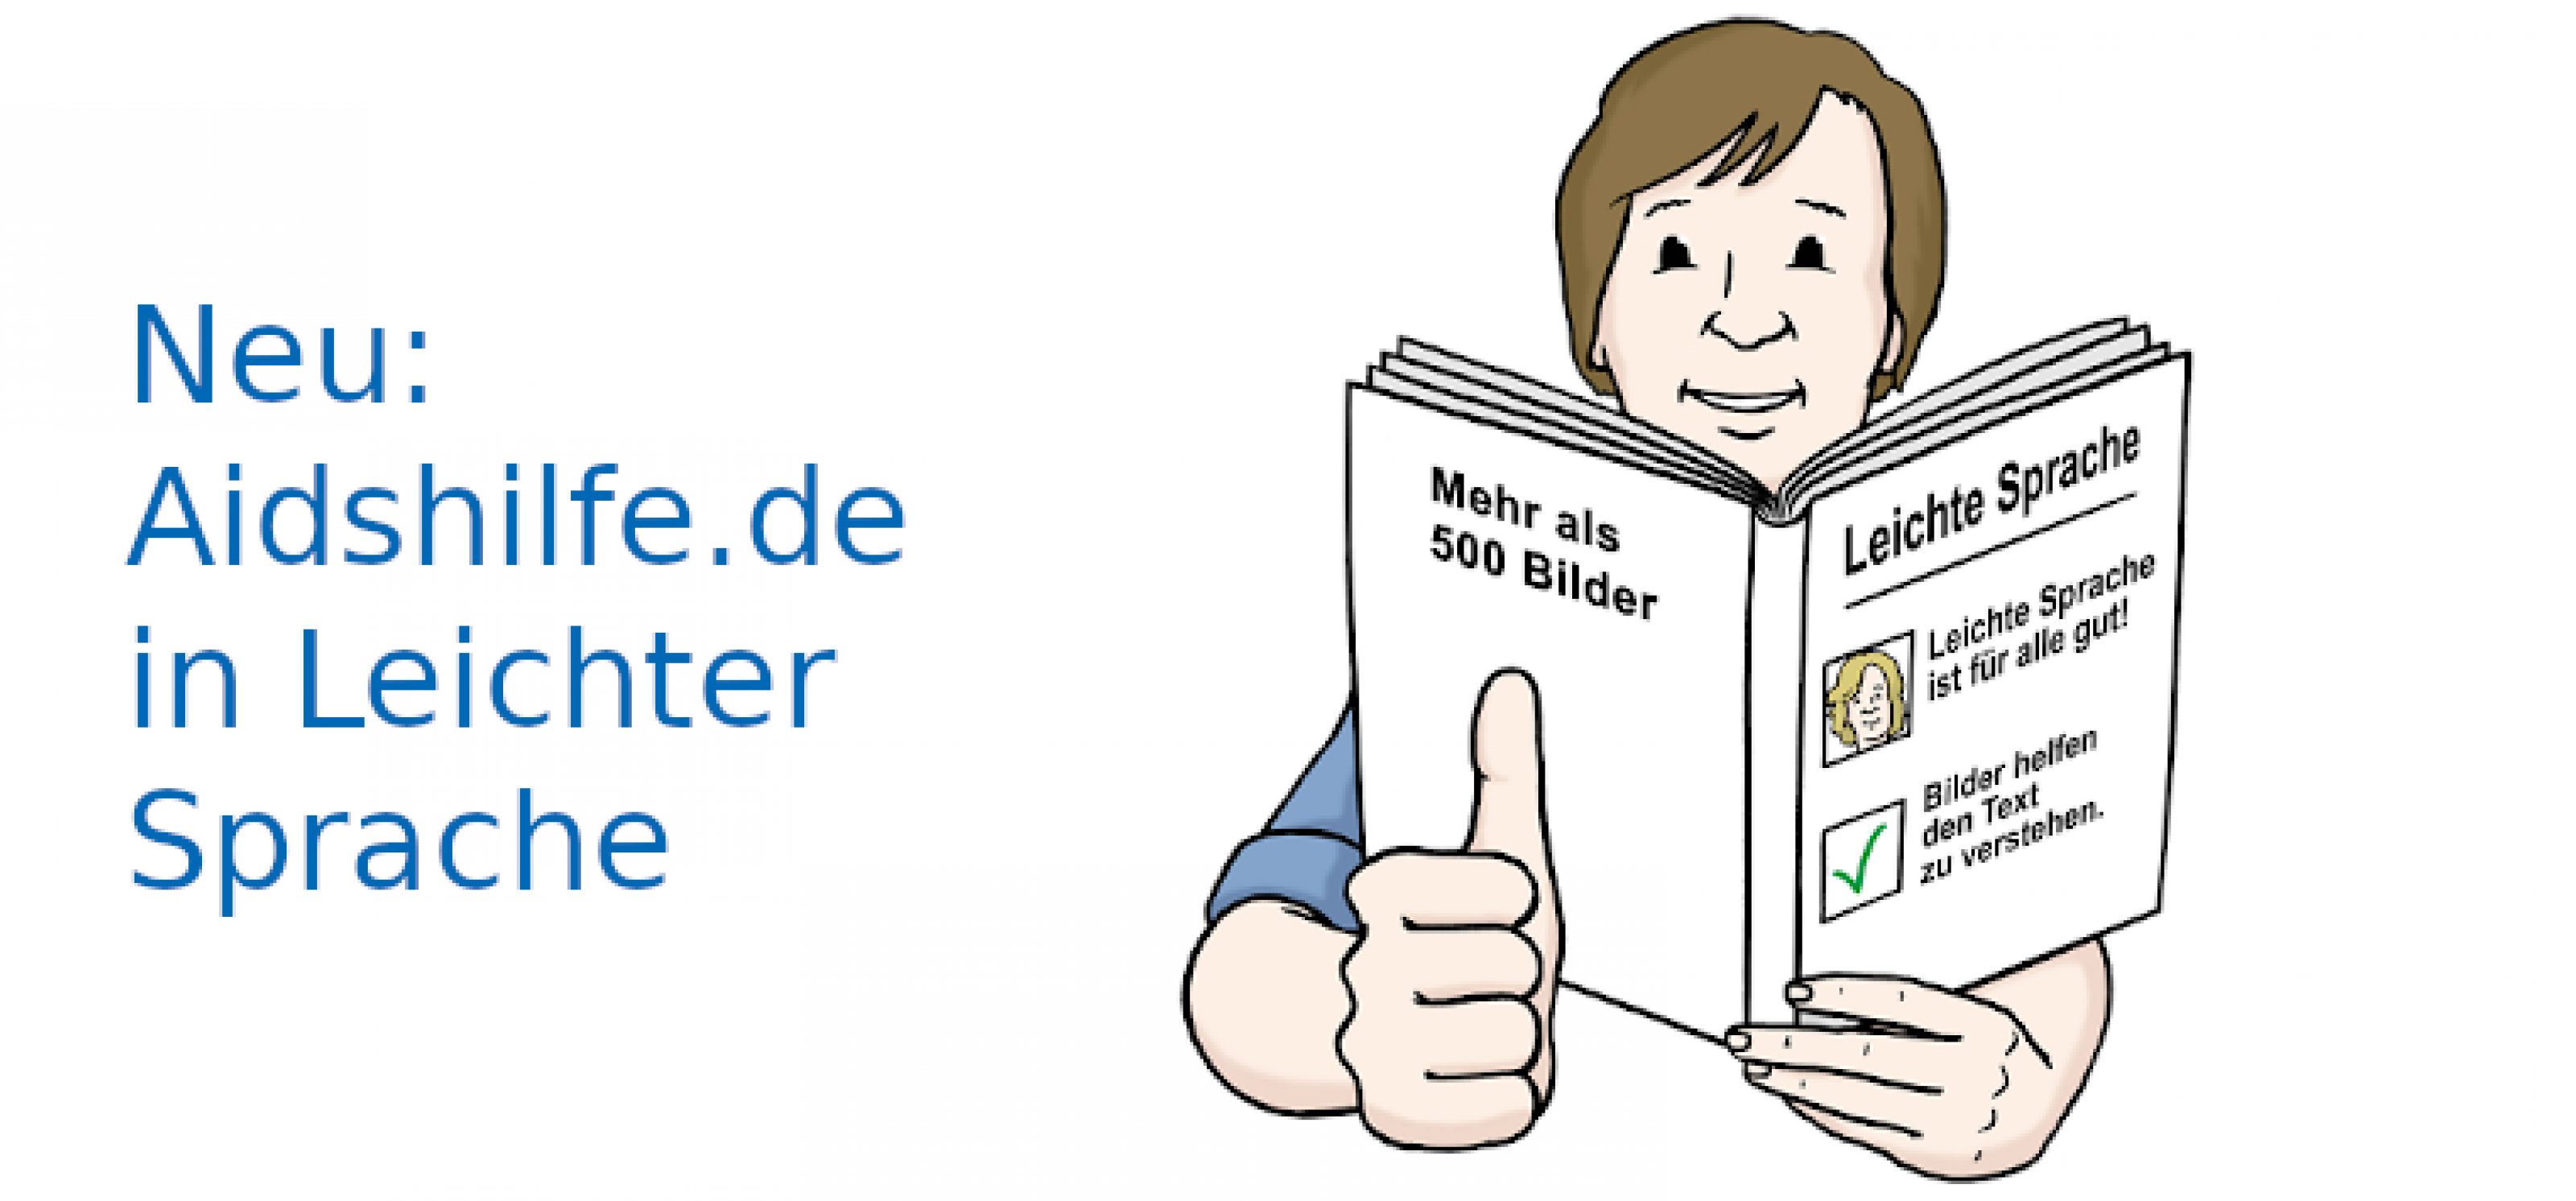 Text: Neu: Aidshilfe.de in Leichter Sprache, daneben eine Person, die ein Buch liest und sich freut, weil sie alles versteht